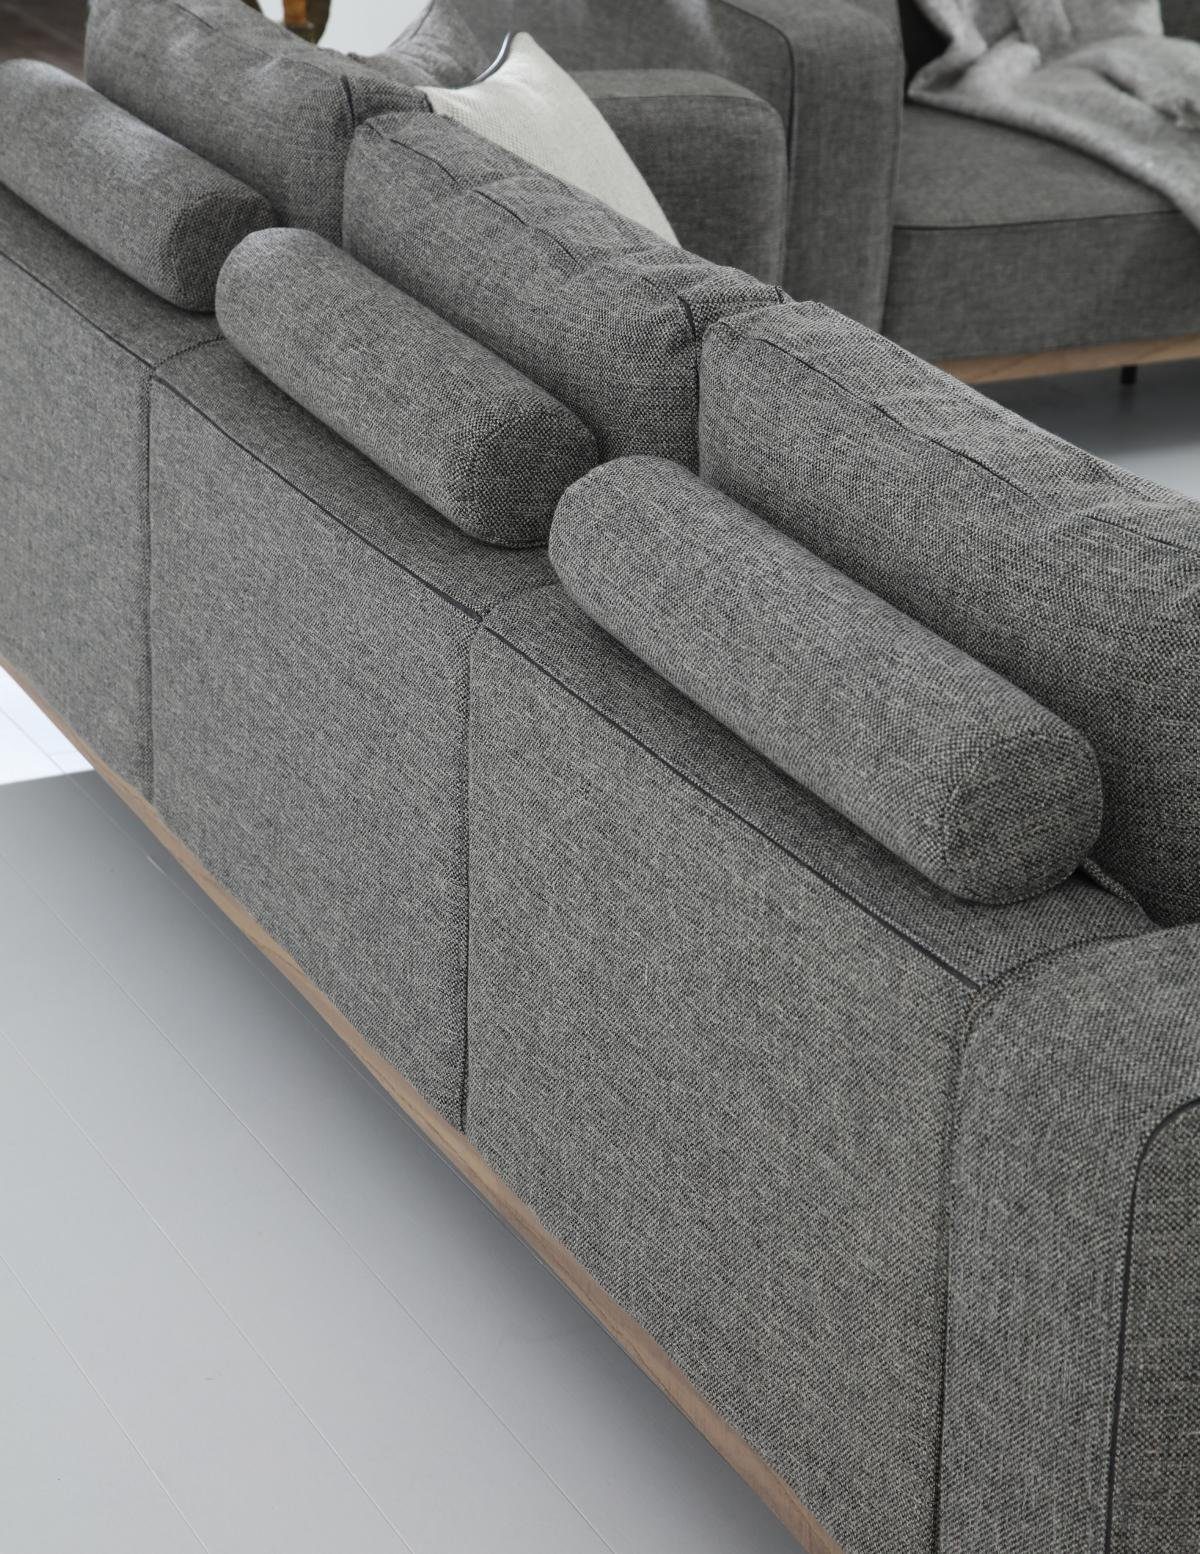 Teile, Modern in 3-Sitzer Grau, Sofas Stoff 1 Zweisitzer Sitzer Design 2 Sofa Made Europa Wohnzimmer JVmoebel